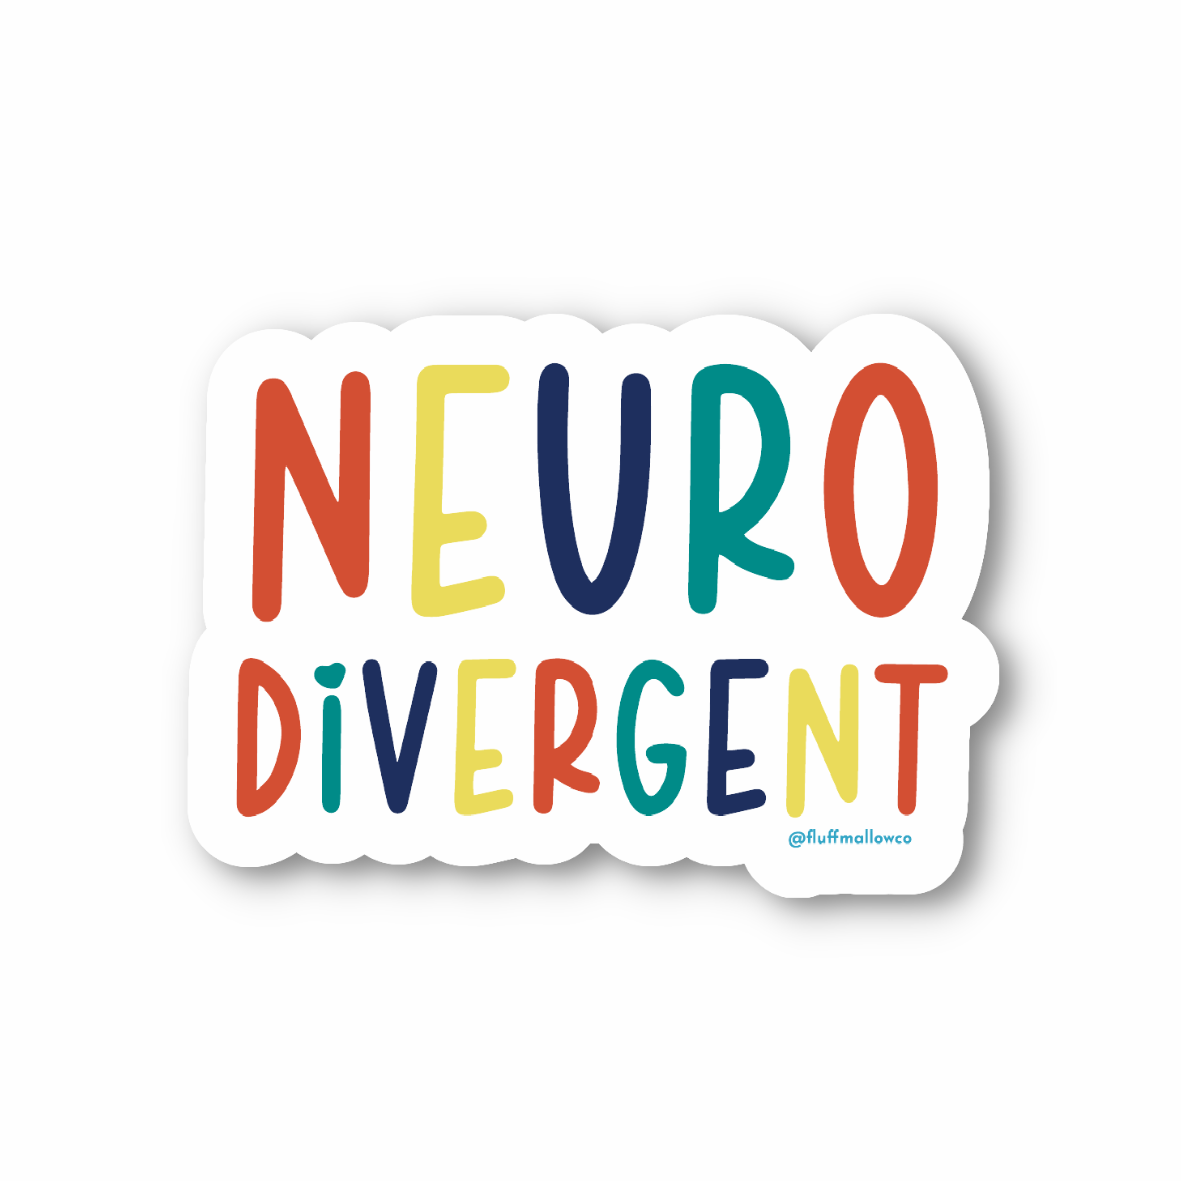 Neurodivergent vinyl sticker